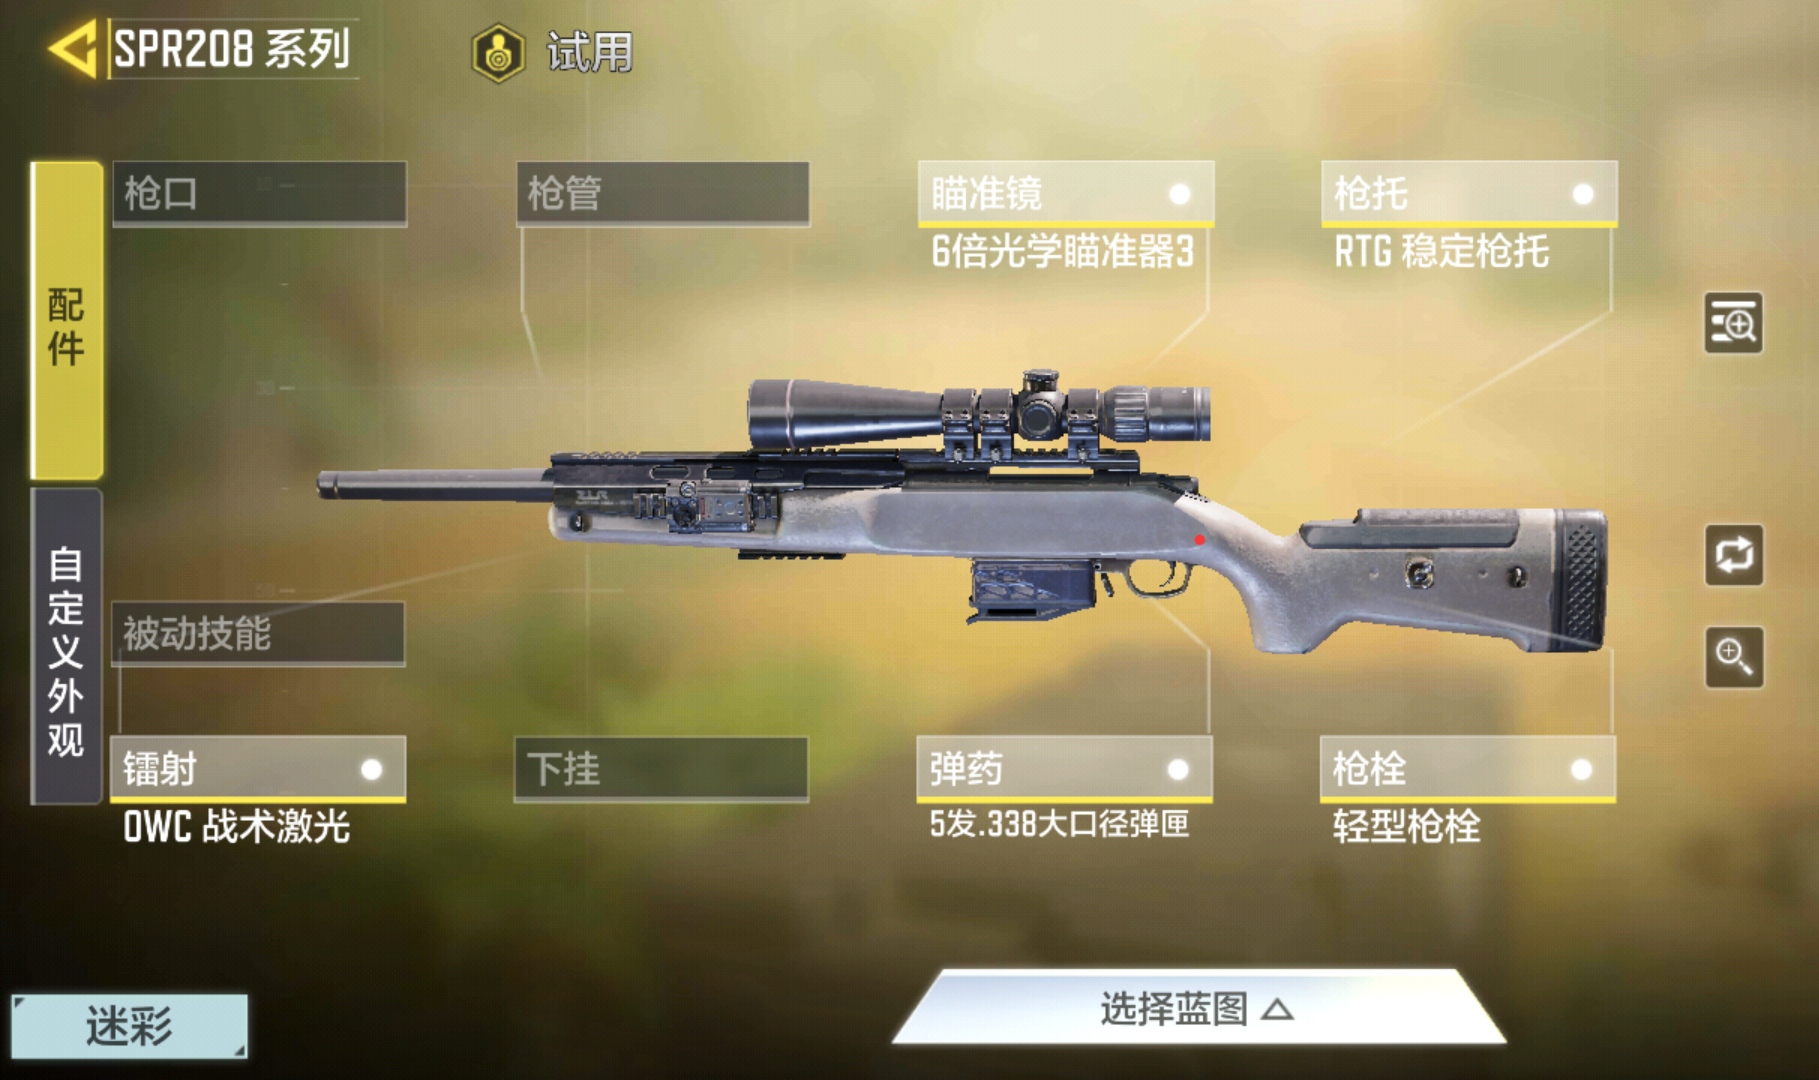 使命战场狙击系列SPR208